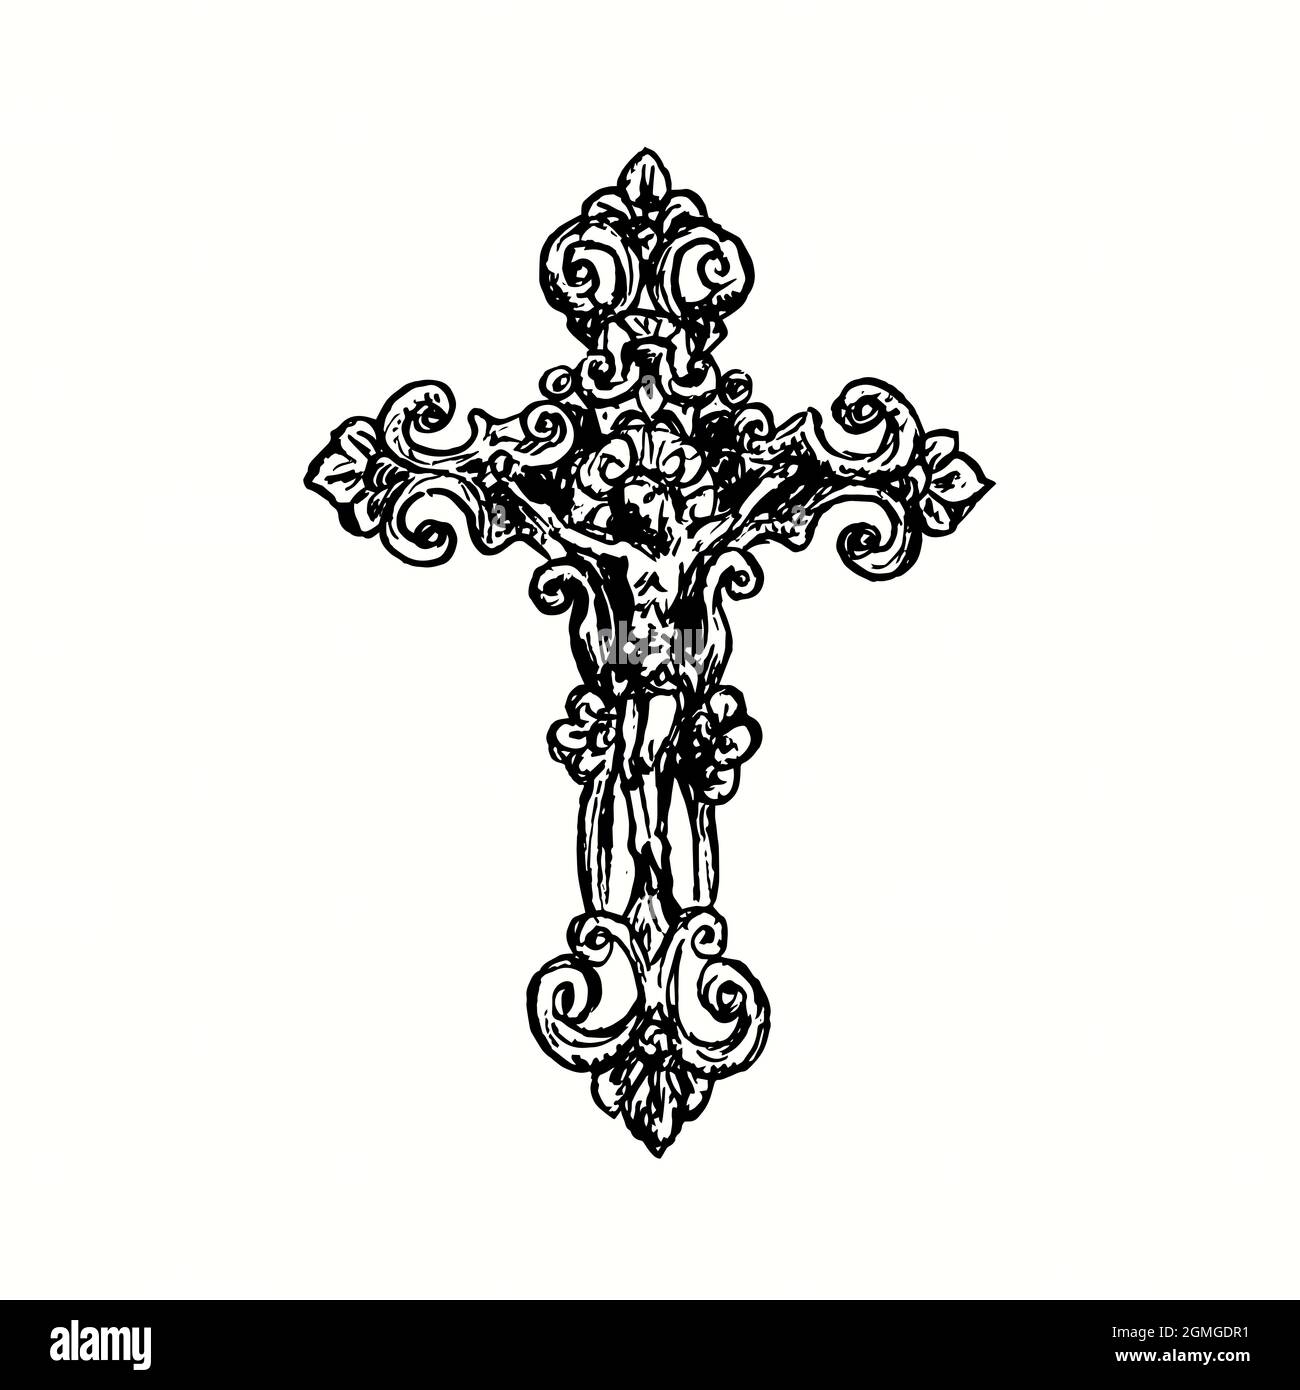 Croix décorative de style vintage avec Crucifixion. Illustration de dessin noir et blanc Banque D'Images